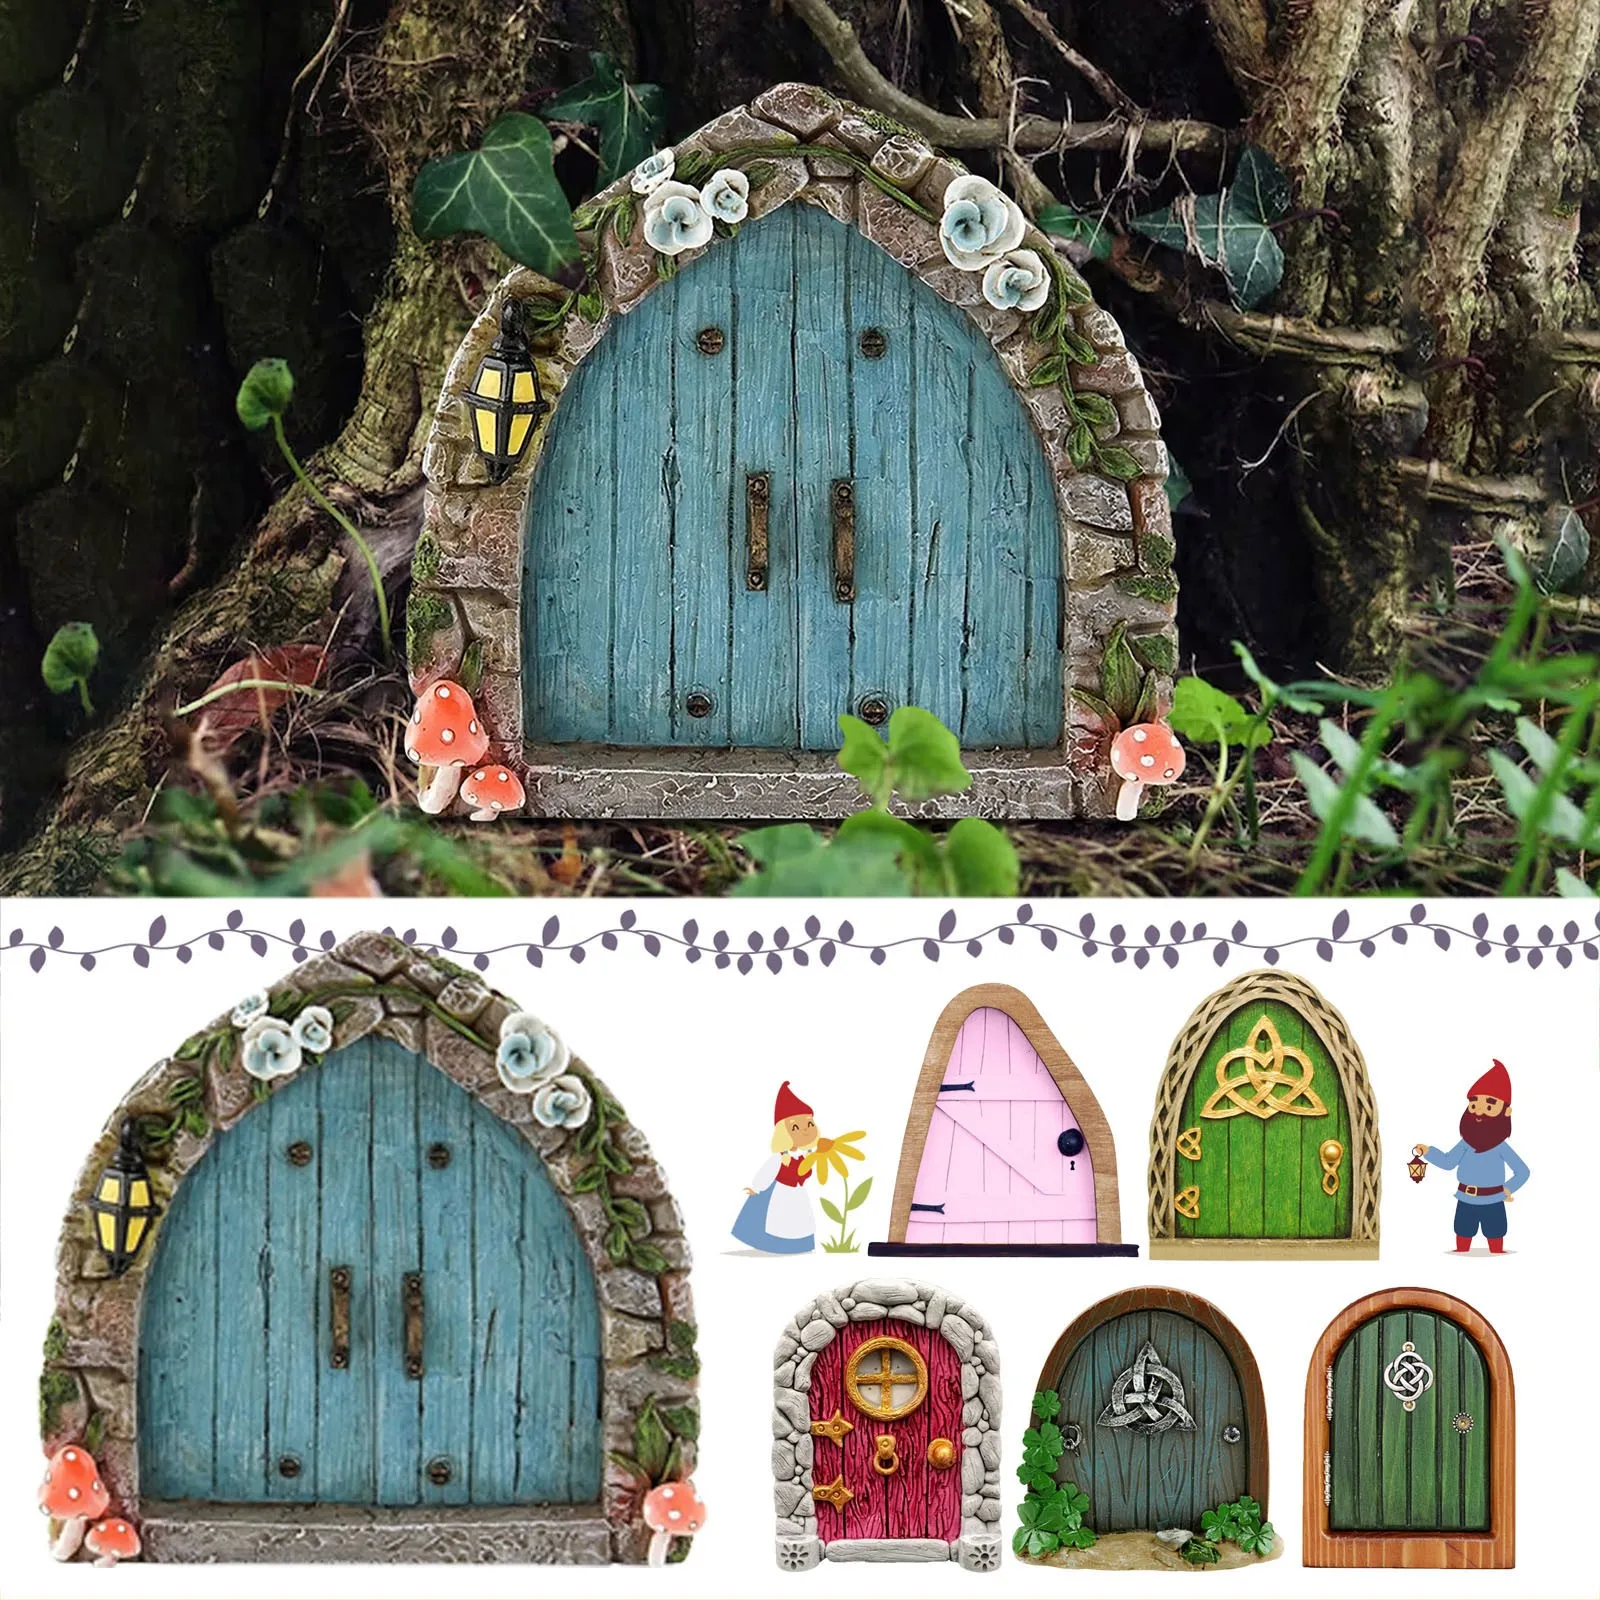 Fairy Door Garden Door Miniature Door Garden Statues Sculptures Decoration 3D DIY Door Decoration Wooden Door Craft Kit Door Craft Door Decort,Outdoor Mystical Miniature Garden Door 1pc, Blue 